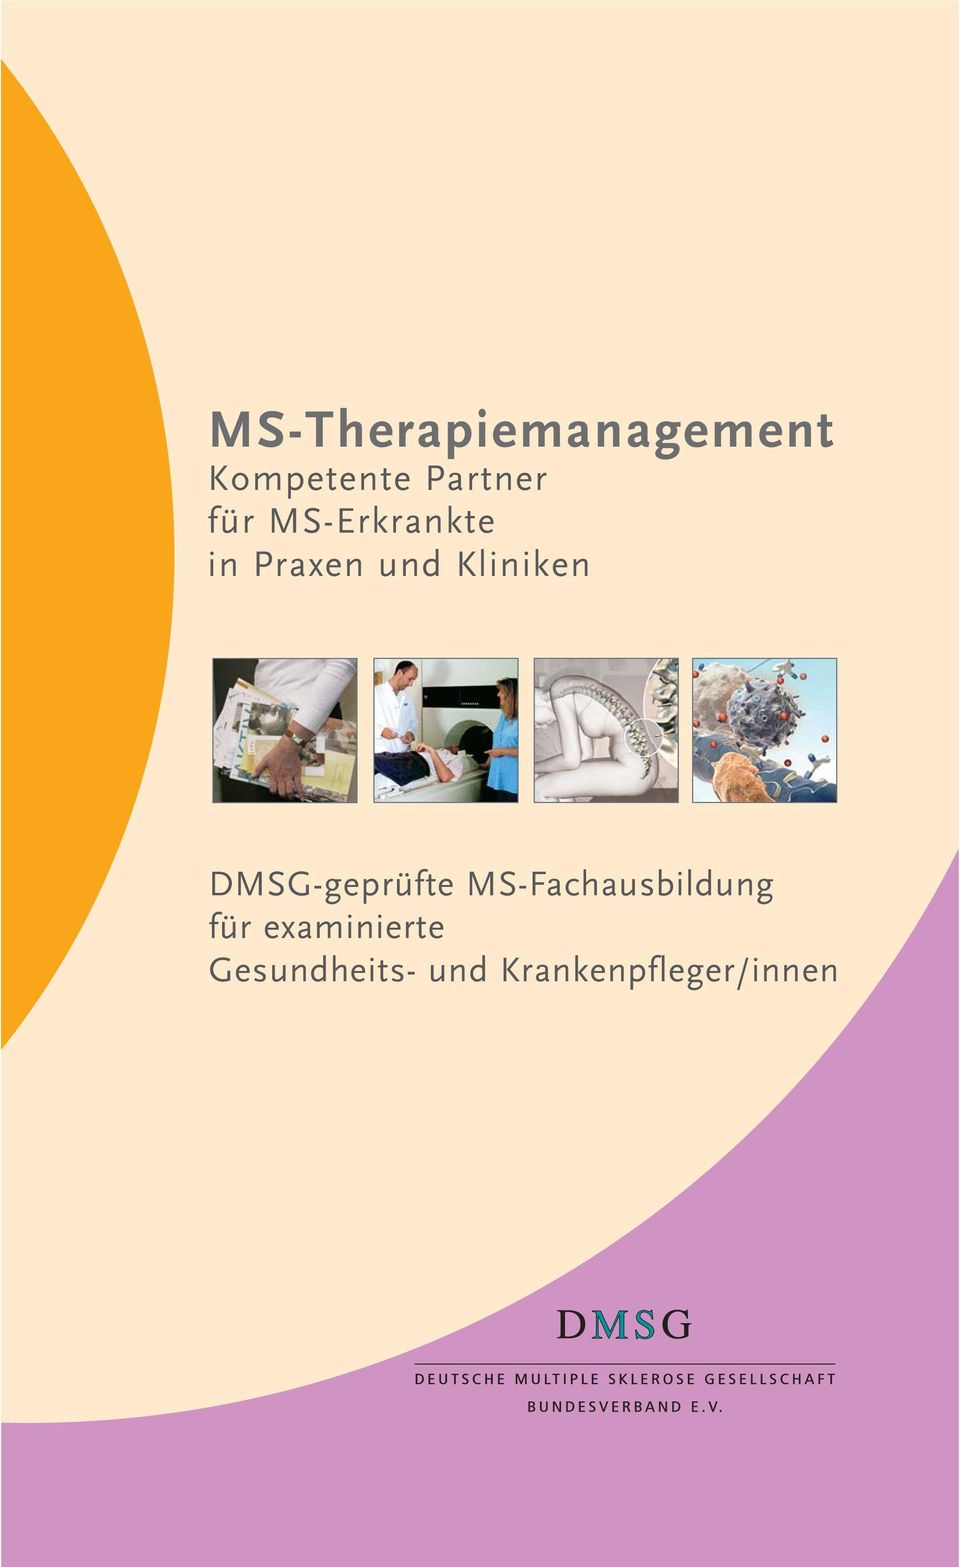 DMSG-geprüfte MS-Fachausbildung für